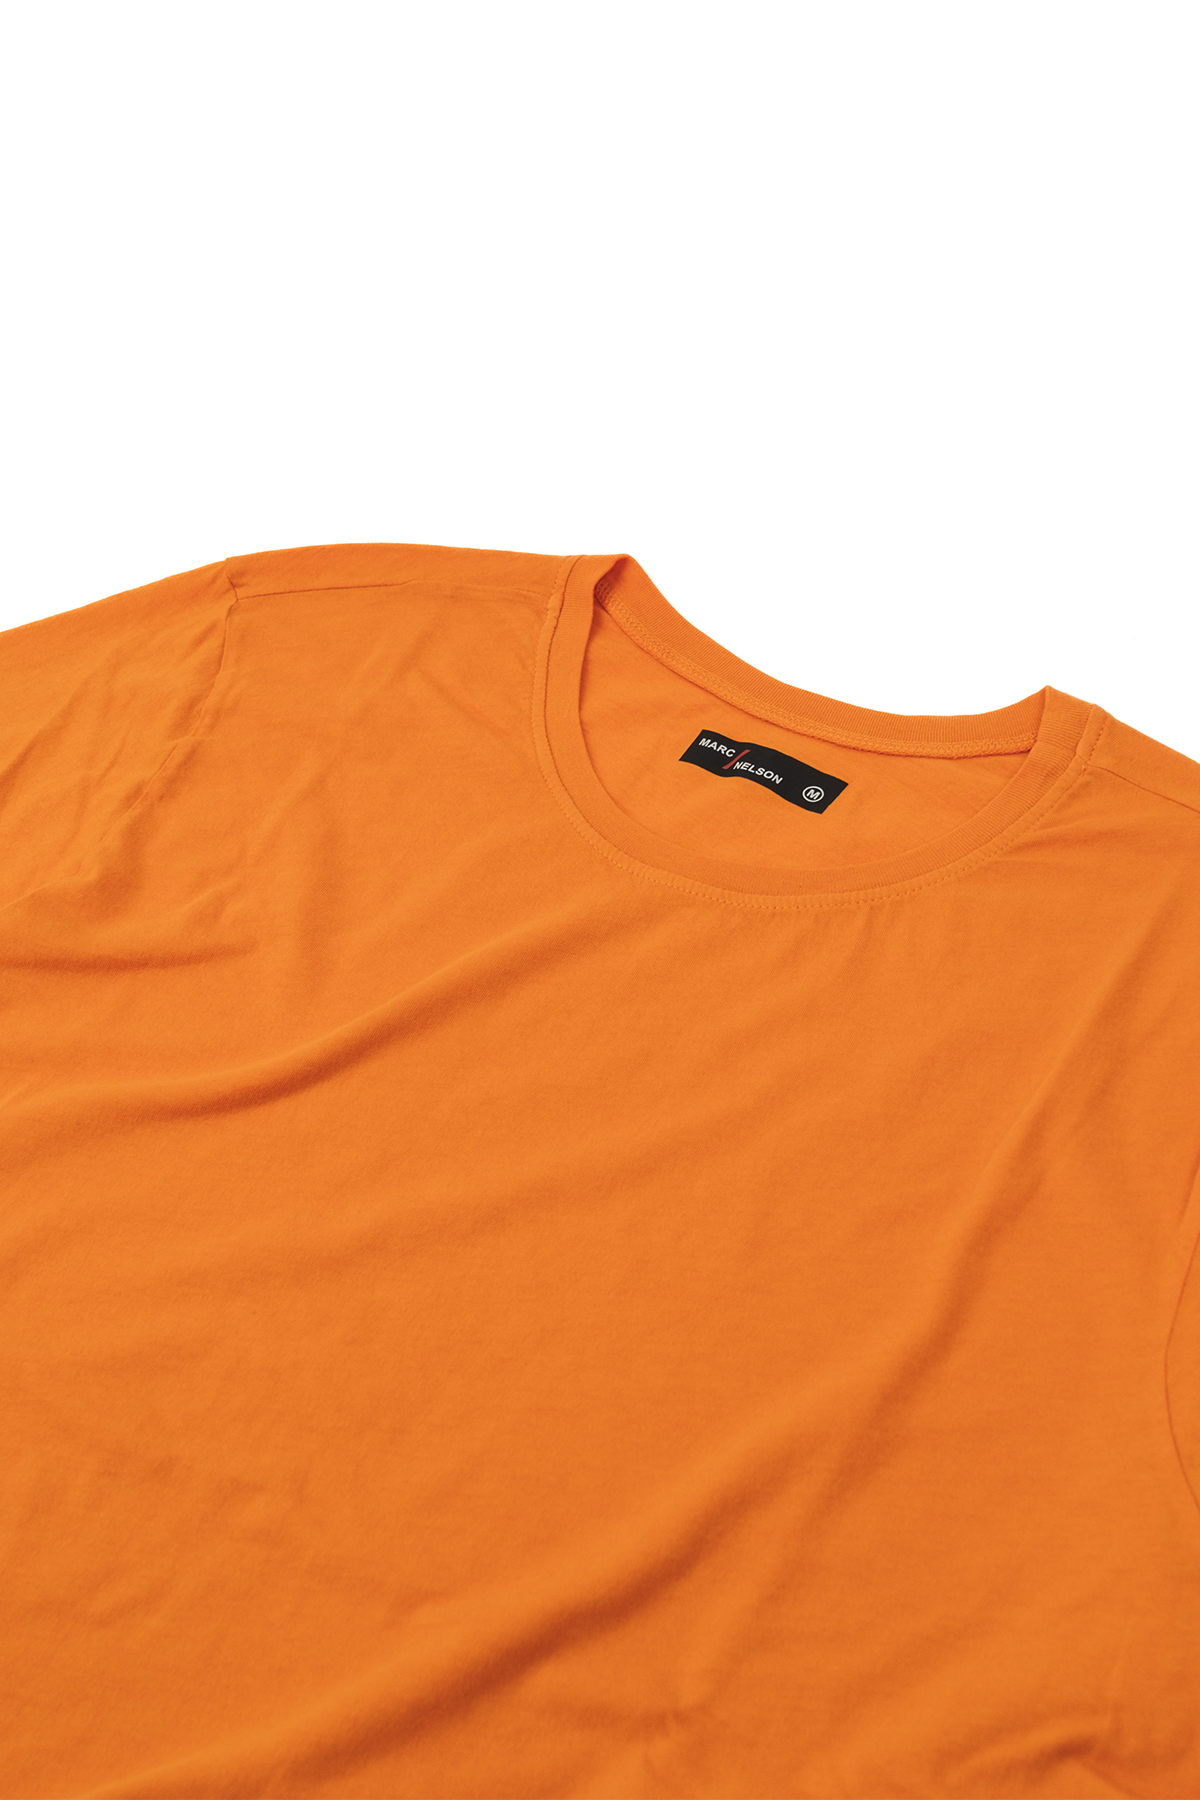 orange long sleeve crew neck shirt